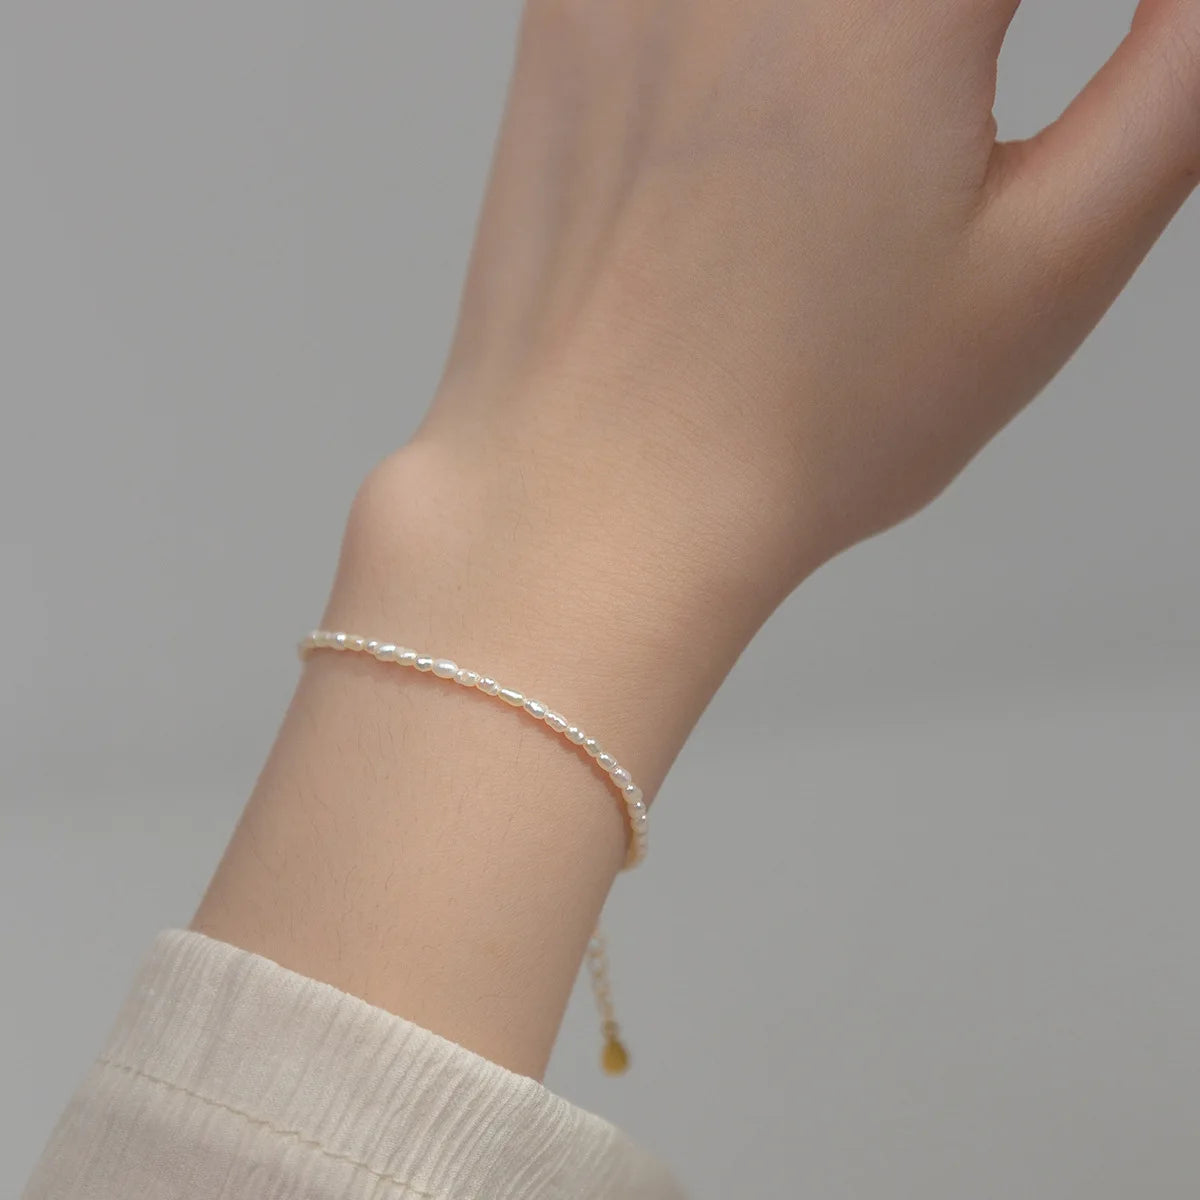 Irregular Pearl Bracelets For Women Silver Sterling Jewelry